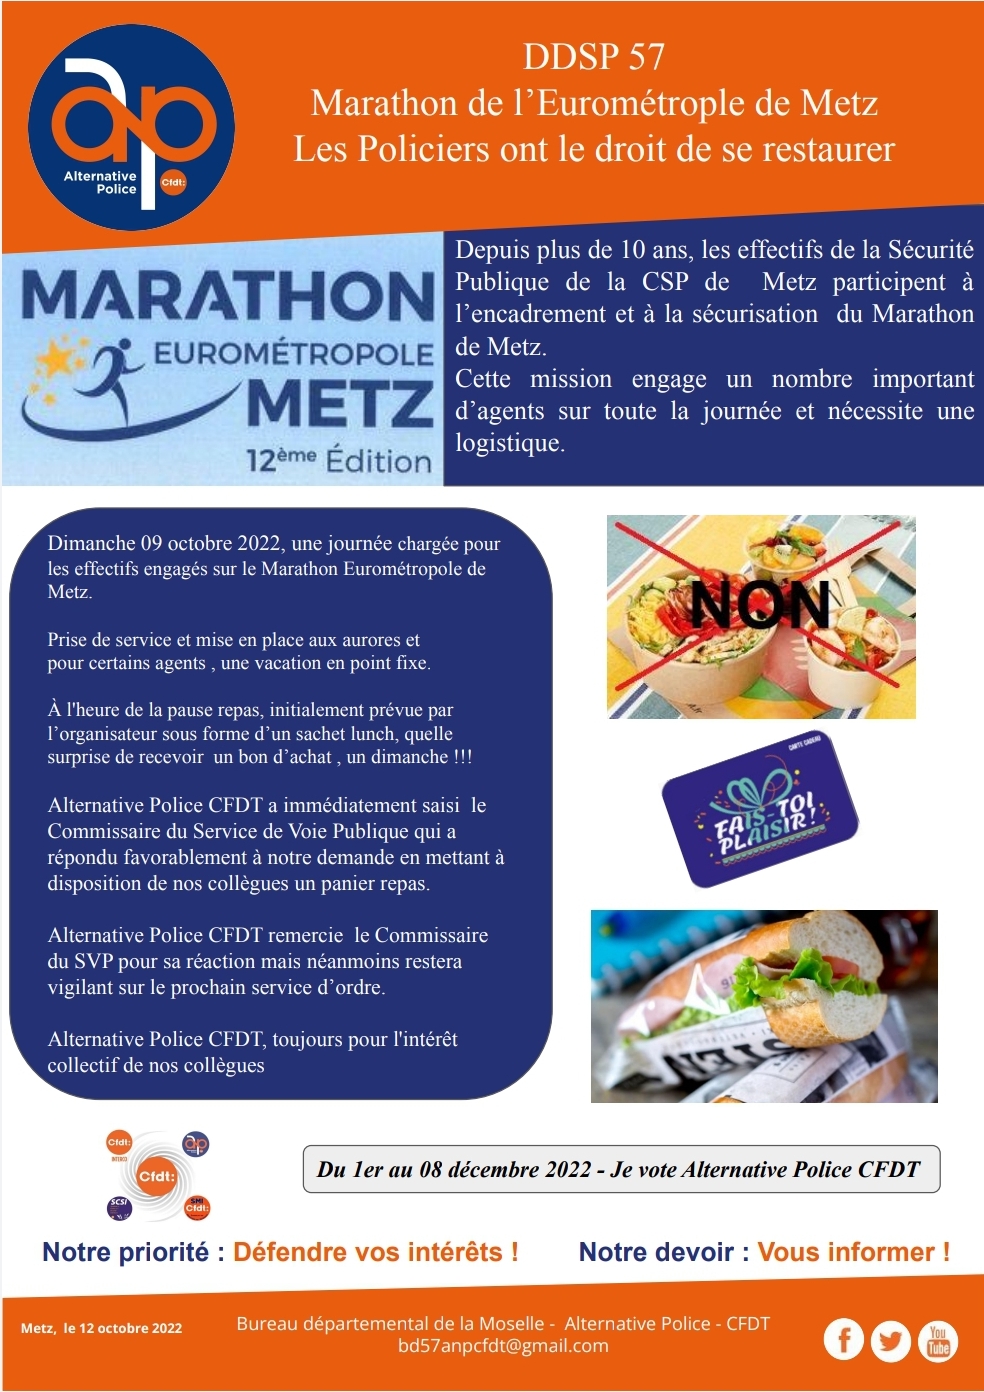 DDSP 57 Marathon de l’Eurométrople de Metz Les Policiers ont le droit de se restaurer